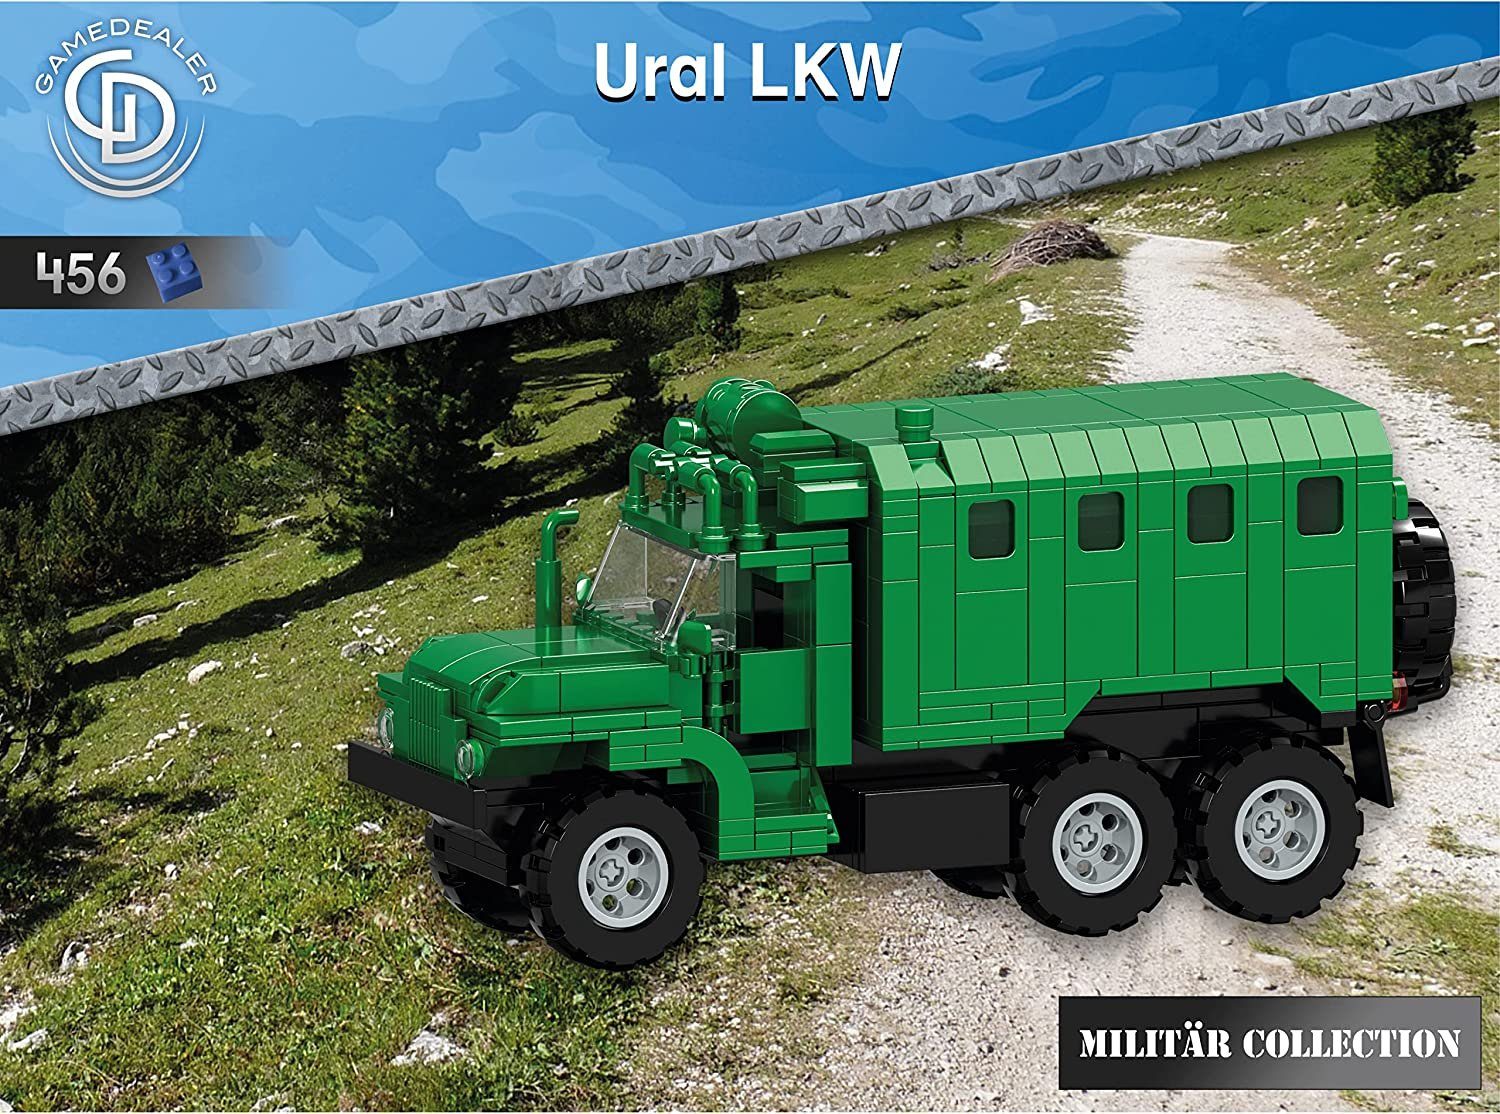 Gamedealer Spielzeug-LKW Russischer Ural Militär LKW 1:25 Klemmbaustein  Modell 456 Teile, (exklusives Set, 456-tlg., Kompatibel mit anderen  Herstellern), exklusives eigenes Design